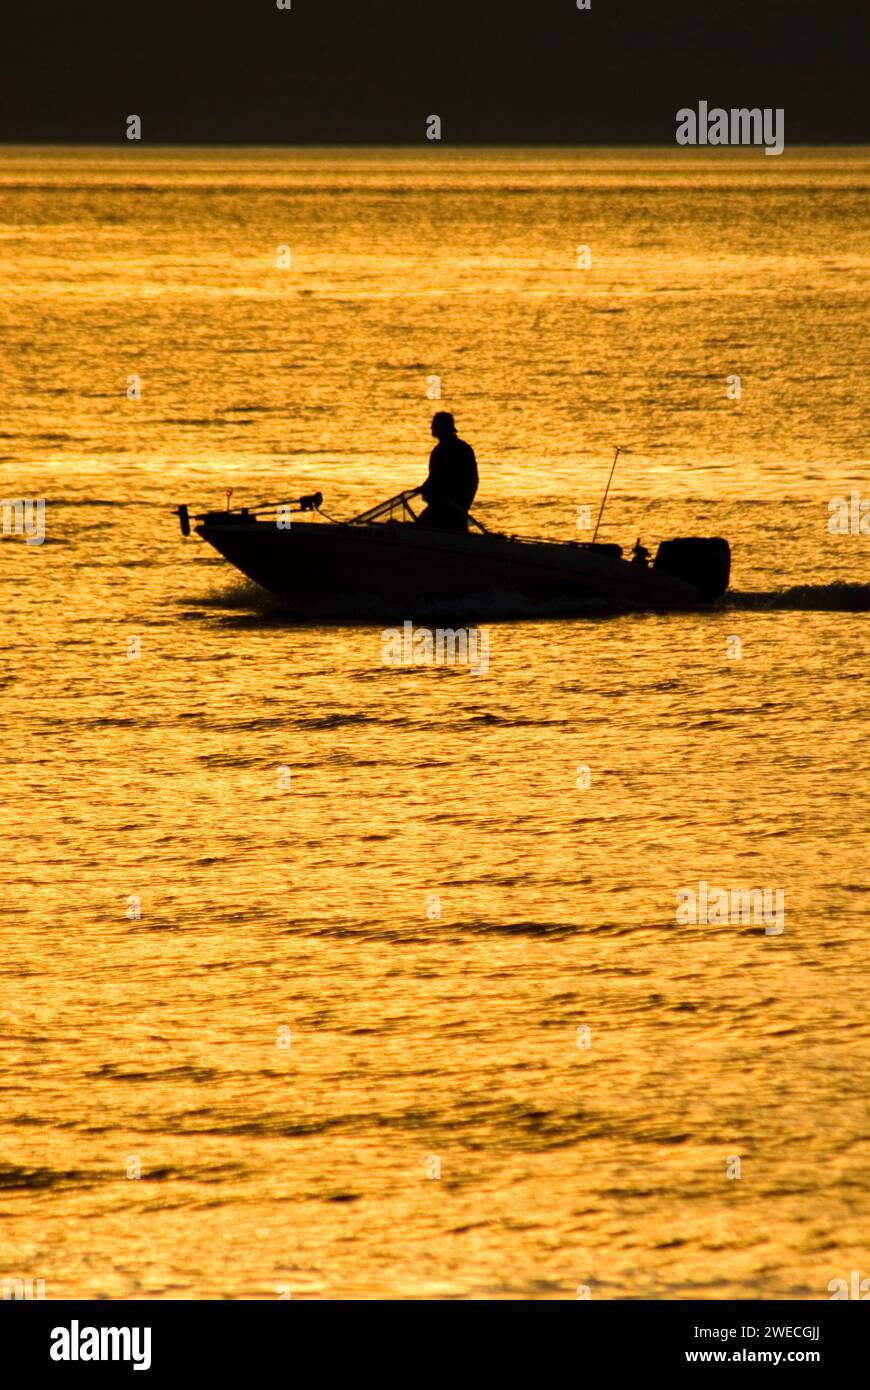 Coucher de soleil en bateau, quai de pêche, Edmonds Edmonds, Washington Banque D'Images